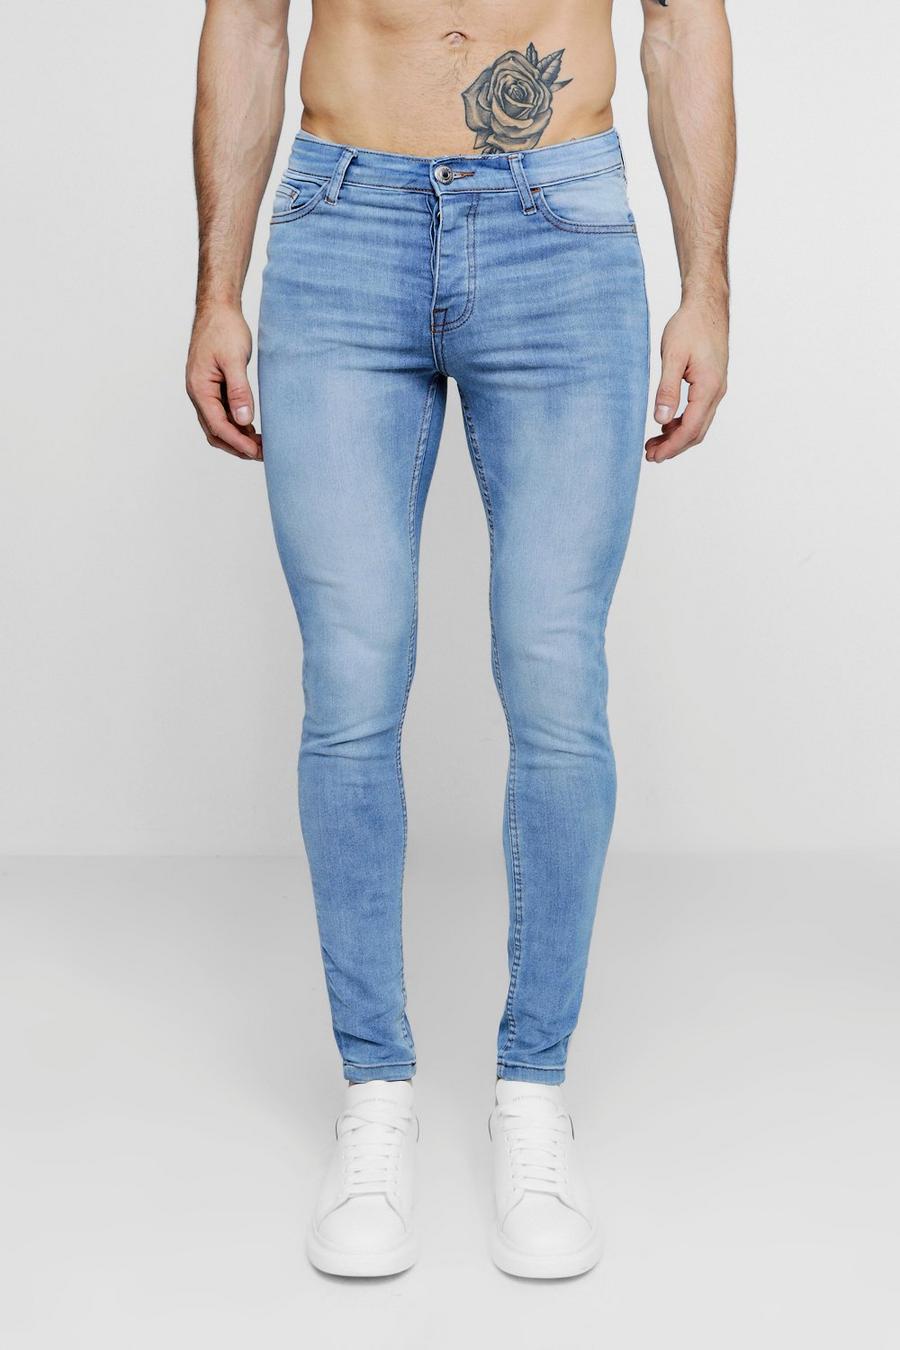 Jeans skinny in blu slavato effetto spray on lavato, Effetto lavato image number 1